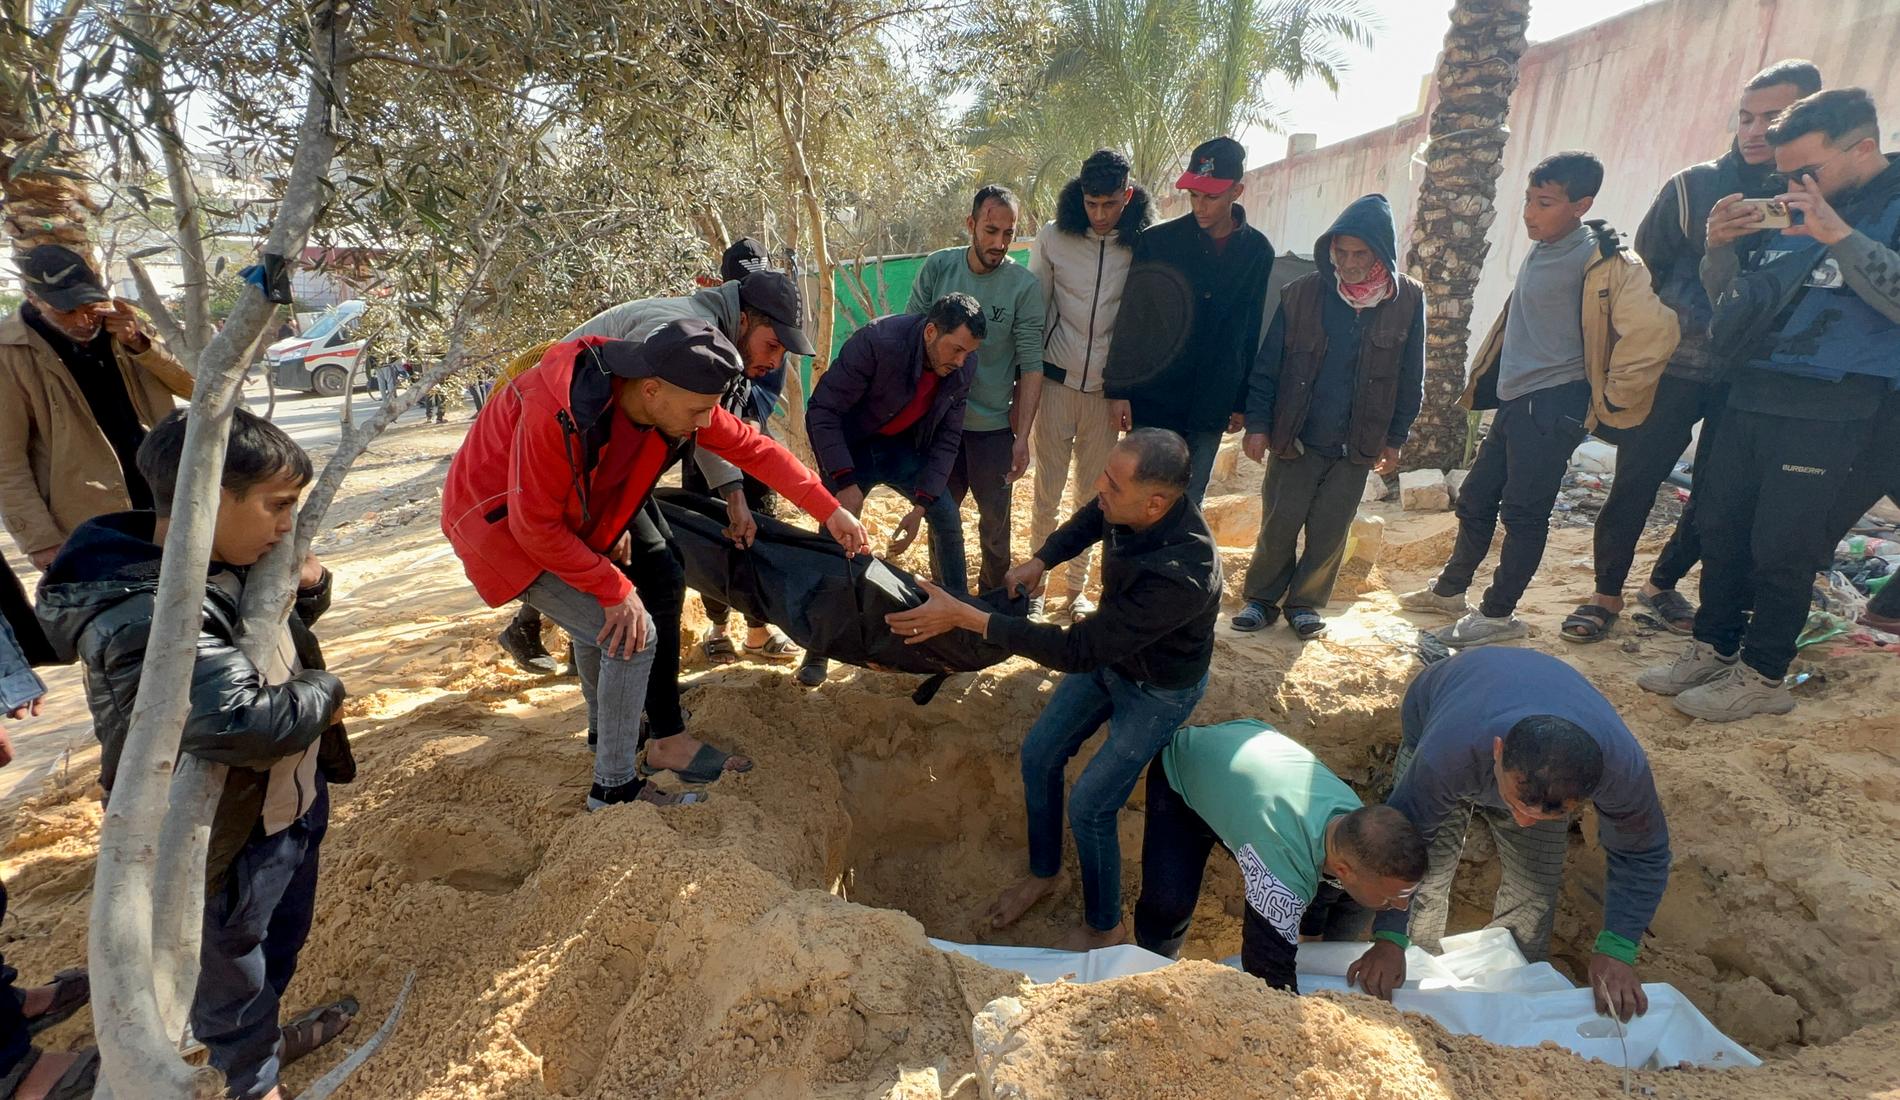 Palestiniers kroppar begravs på mark som tillhör Nassersjukhuset i Khan Yunis på måndagen.